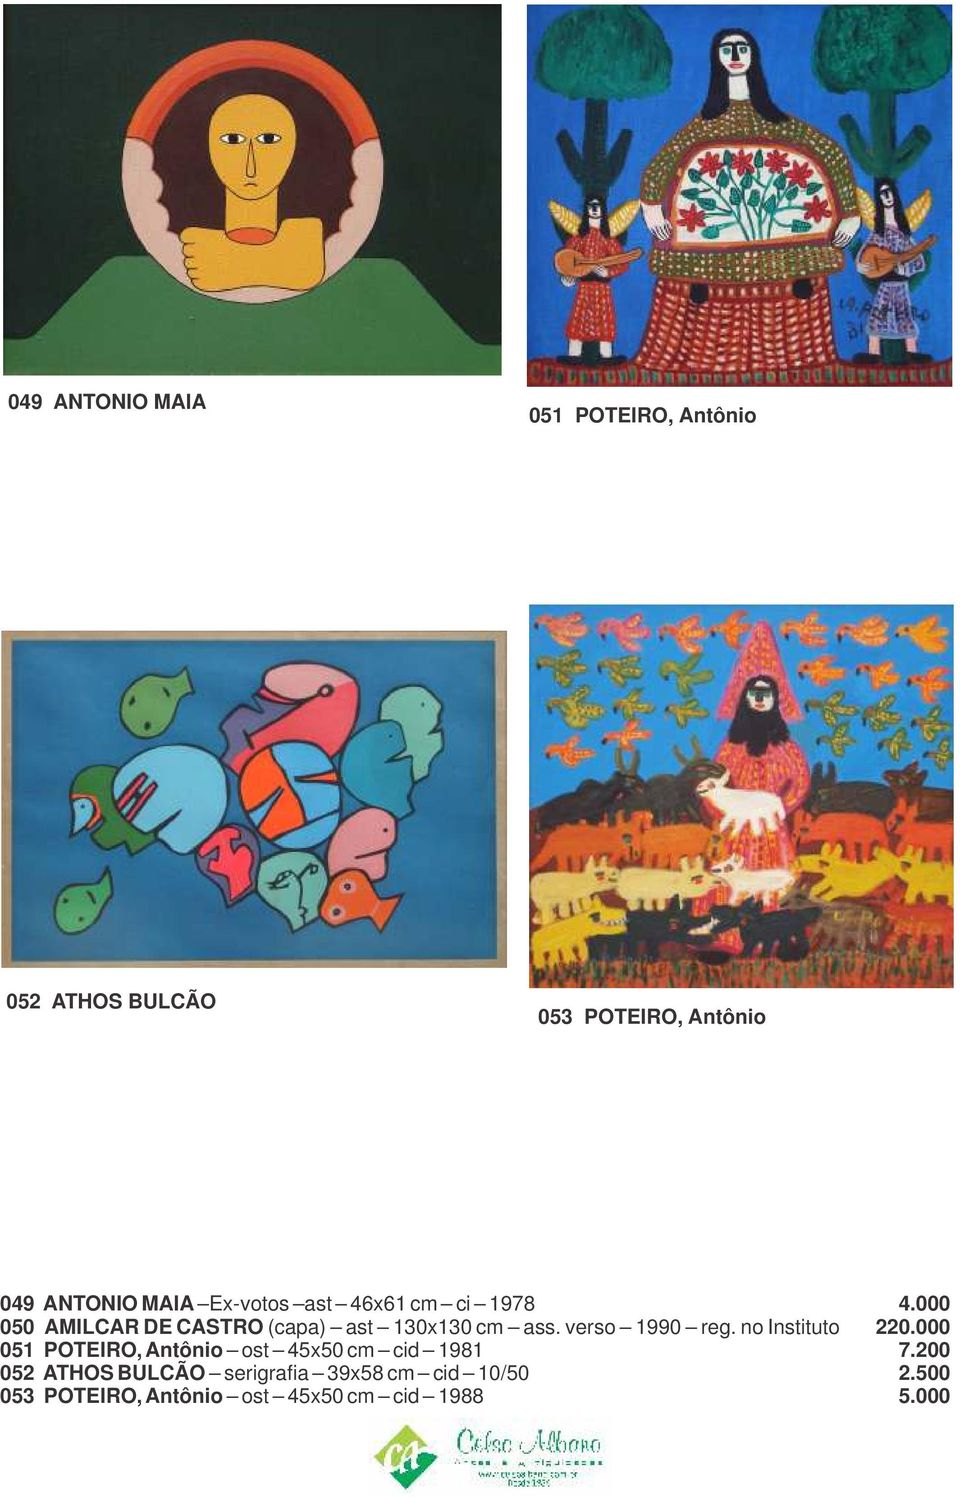 verso 1990 reg. no Instituto 220.000 051 POTEIRO, Antônio ost 45x50 cm cid 1981 7.